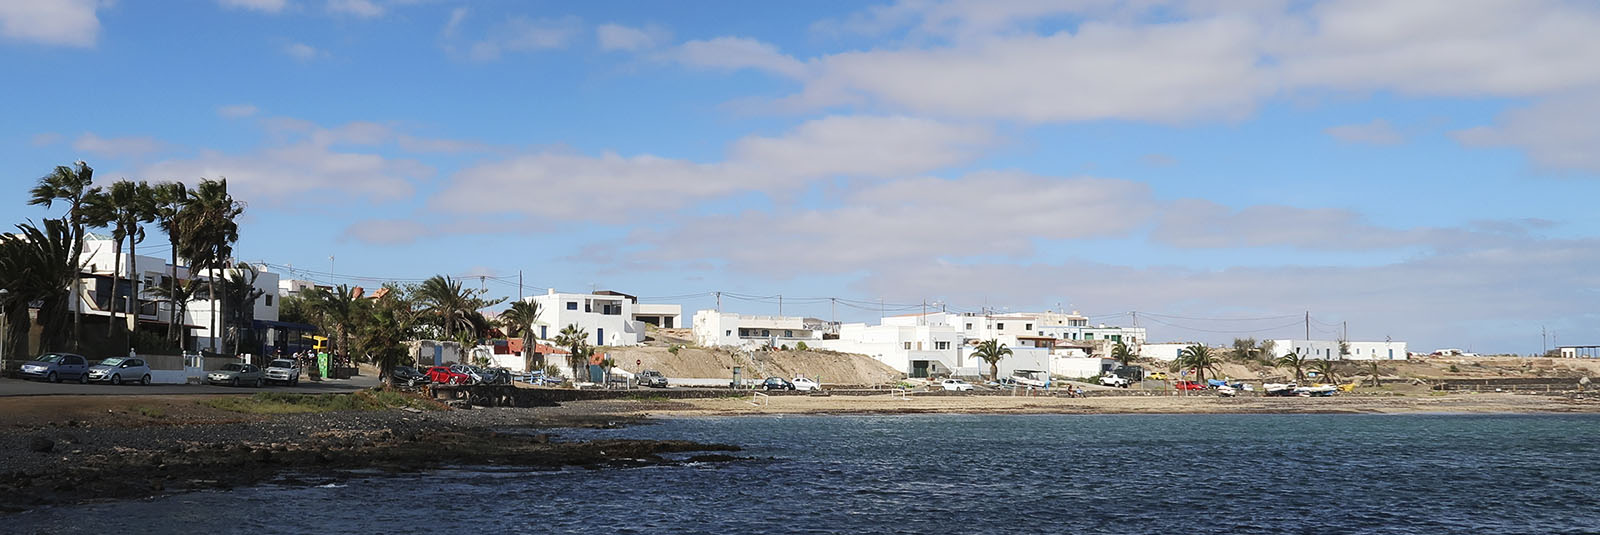 Salinas del Carmen Fuerteventura.